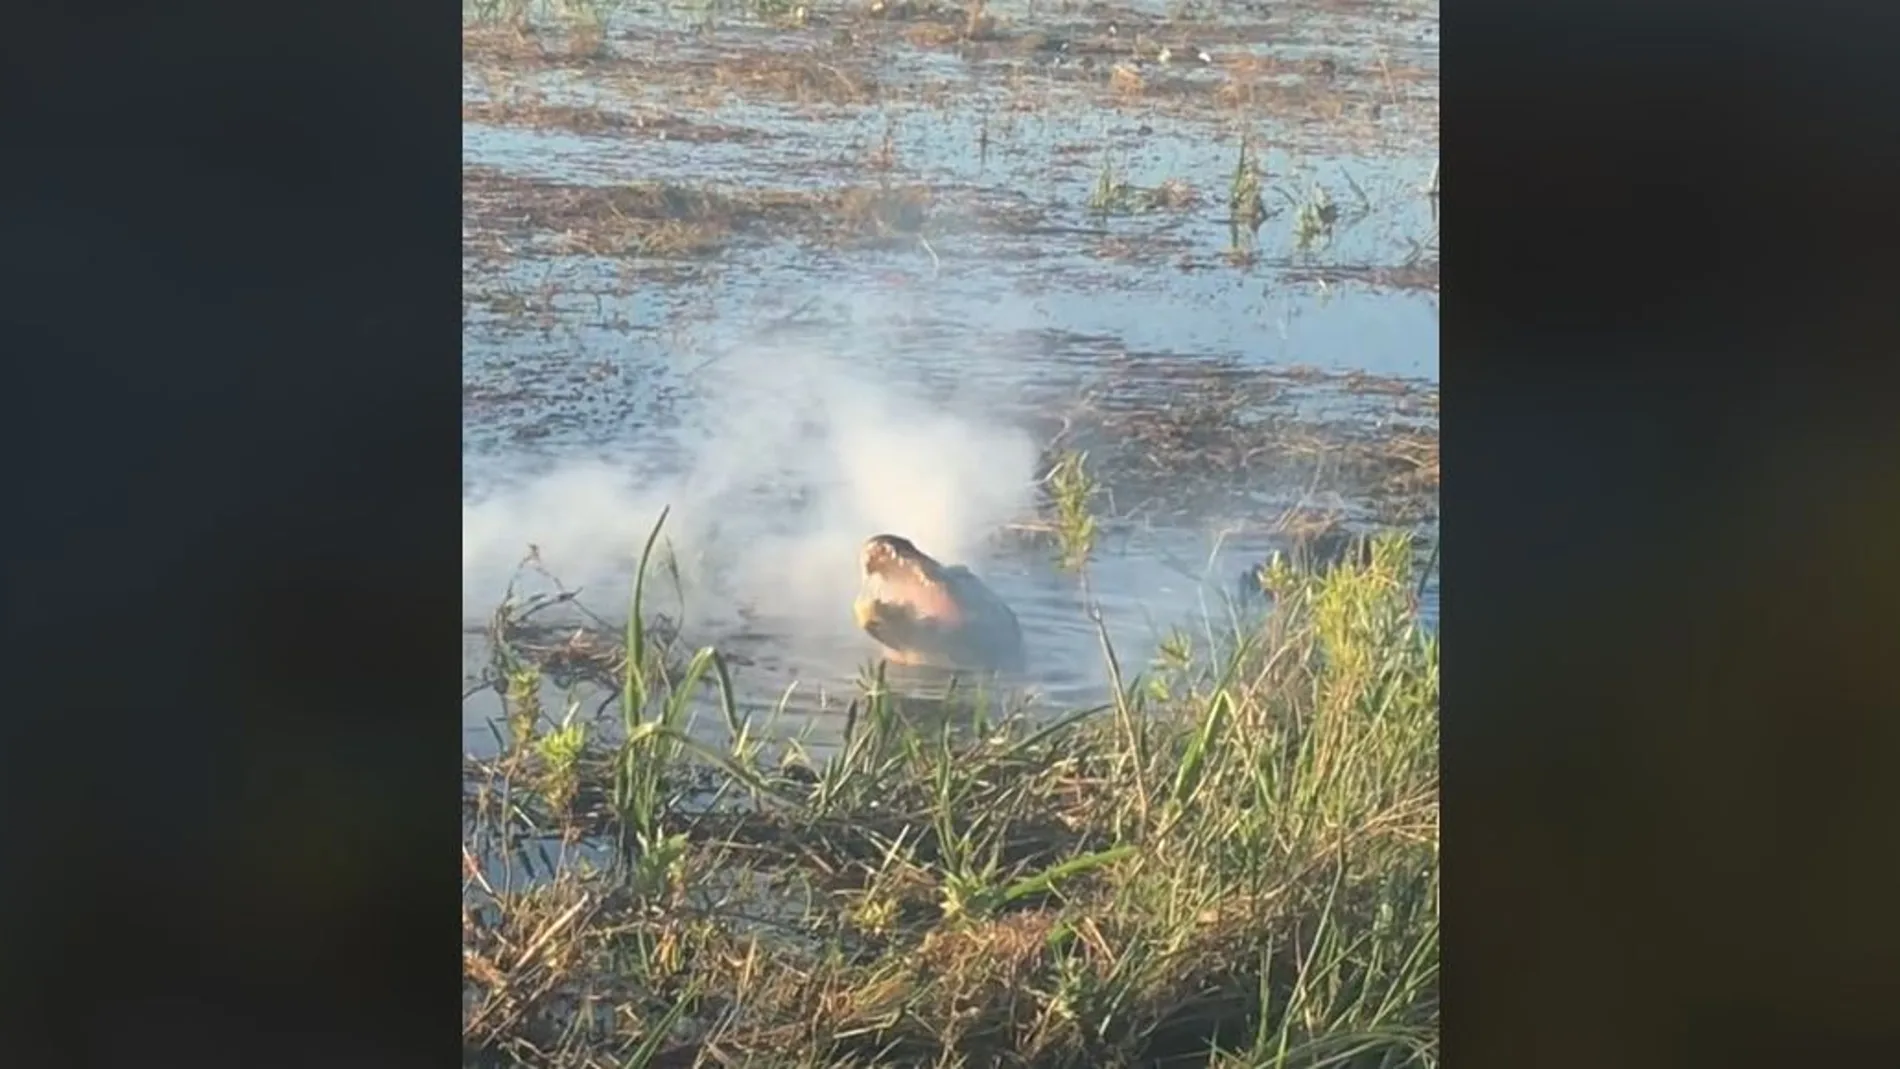 El impactante momento en que un caimán engulle un dron y comienza a echar humo por la boca